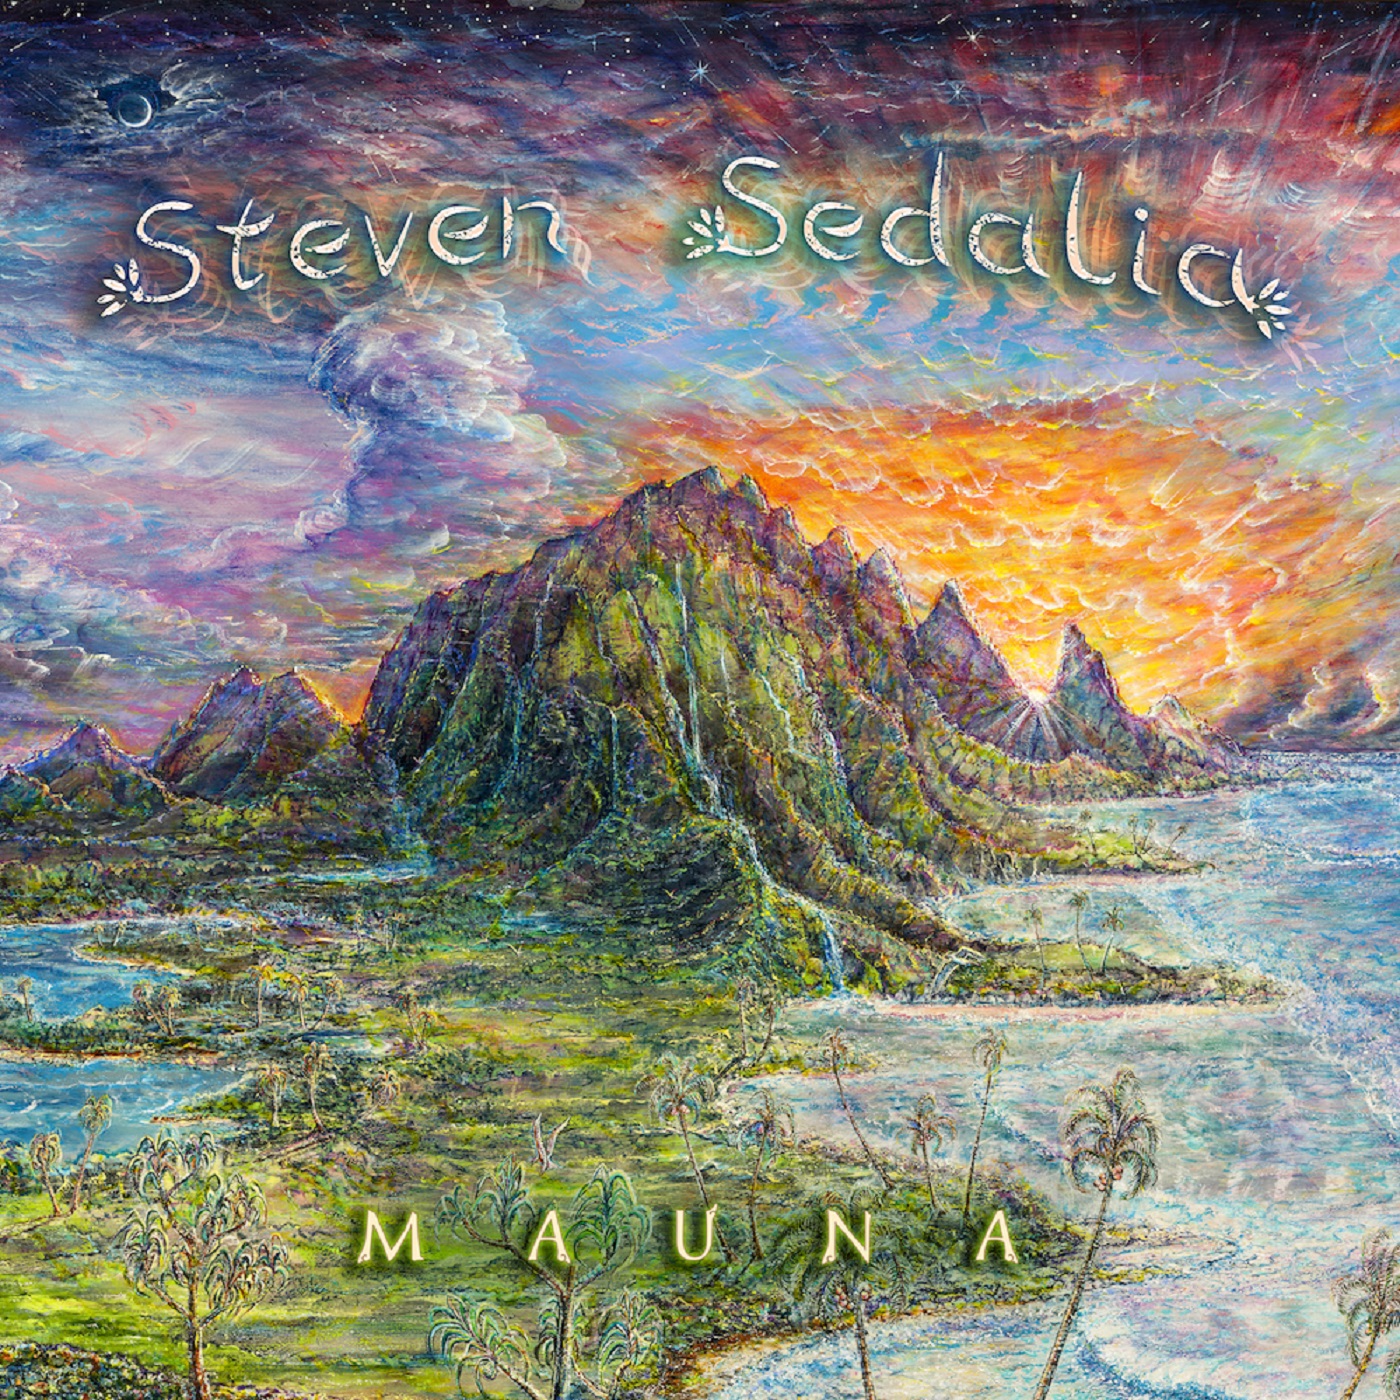 Steven Sedalia, Kauaʻi based singer songwriter releases debut album